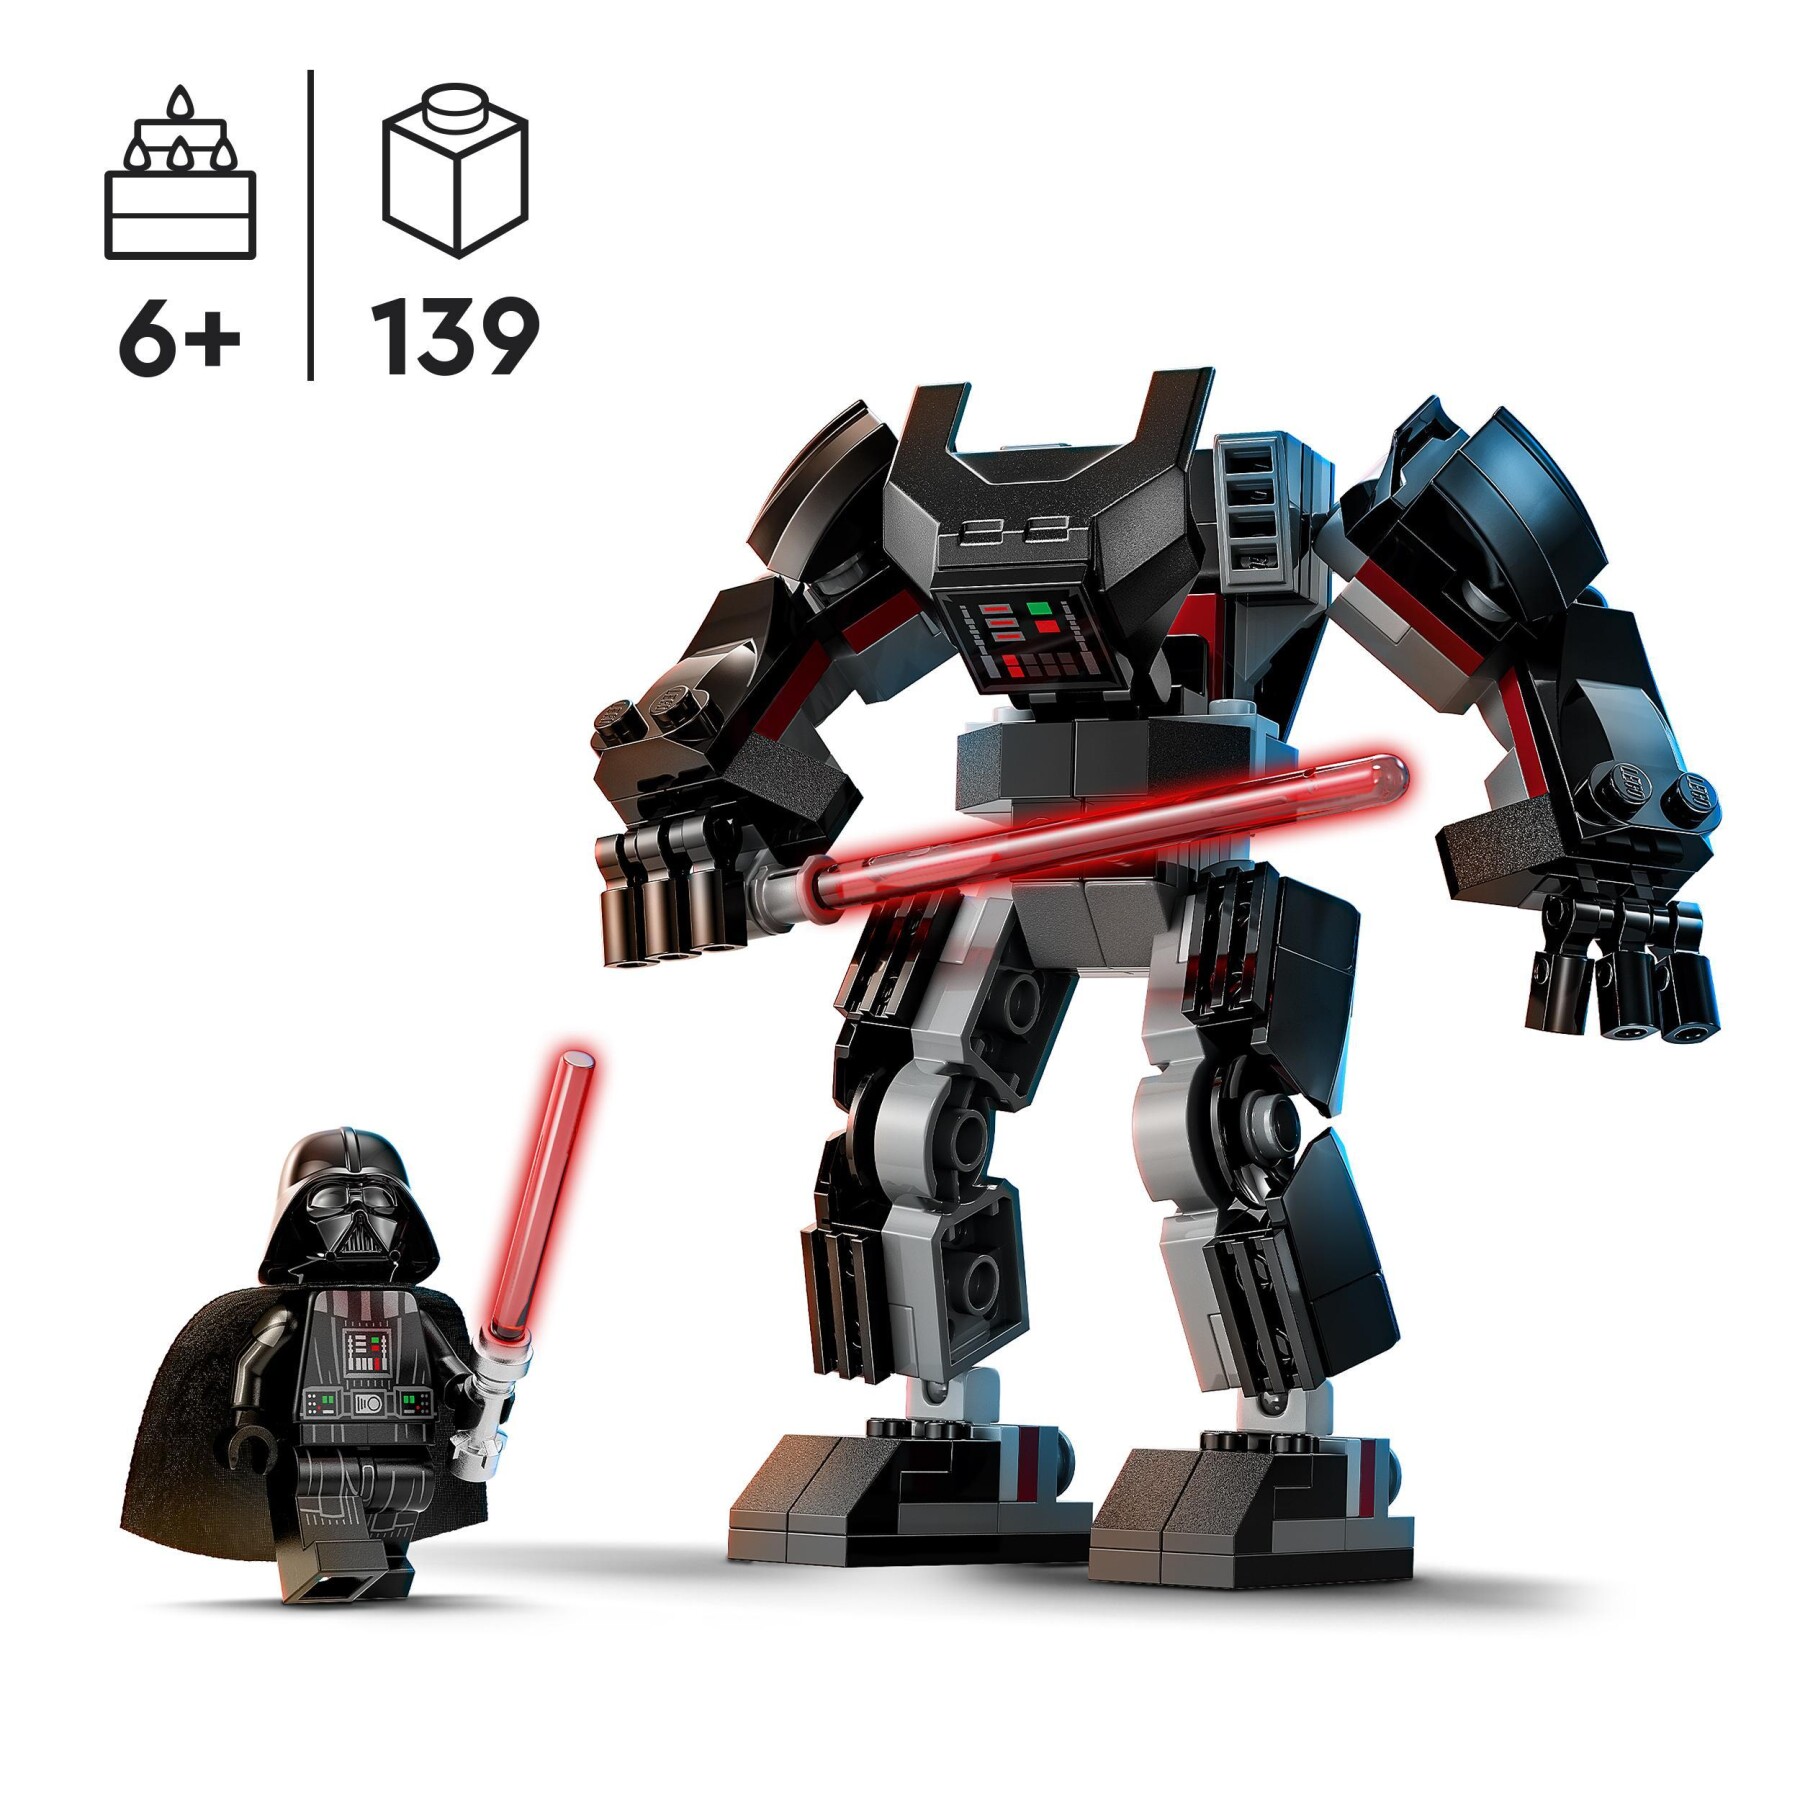 Lego star wars 75368 mech di darth vader, action figure snodabile con minifigure e spada laser, giochi per bambini di 6+ anni - LEGO STAR WARS, Star Wars